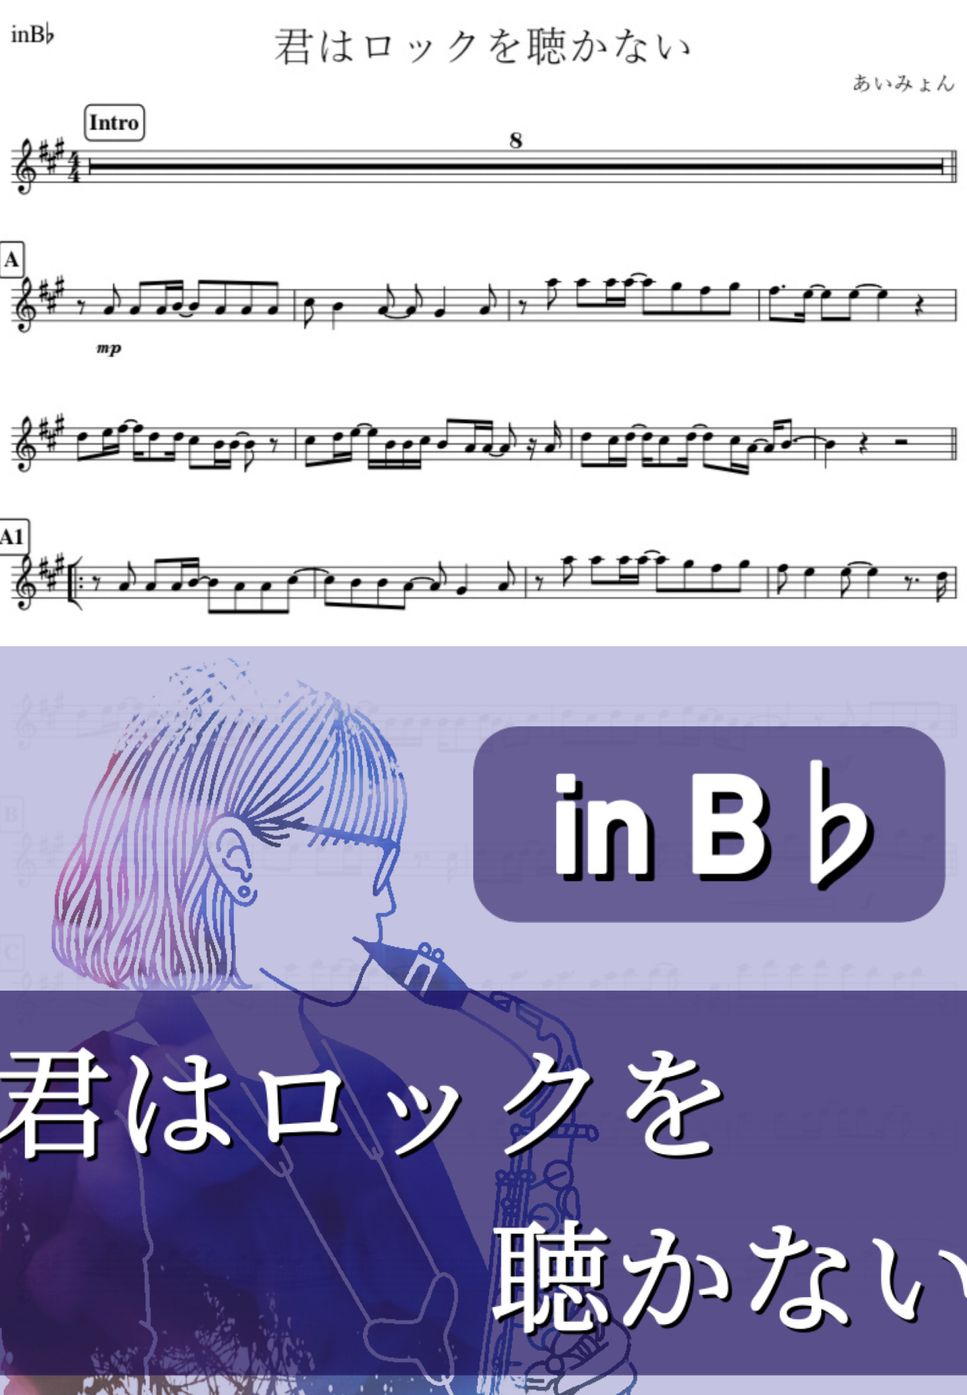 あいみょん - 君はロックを聴かない (B♭) by kanamusic